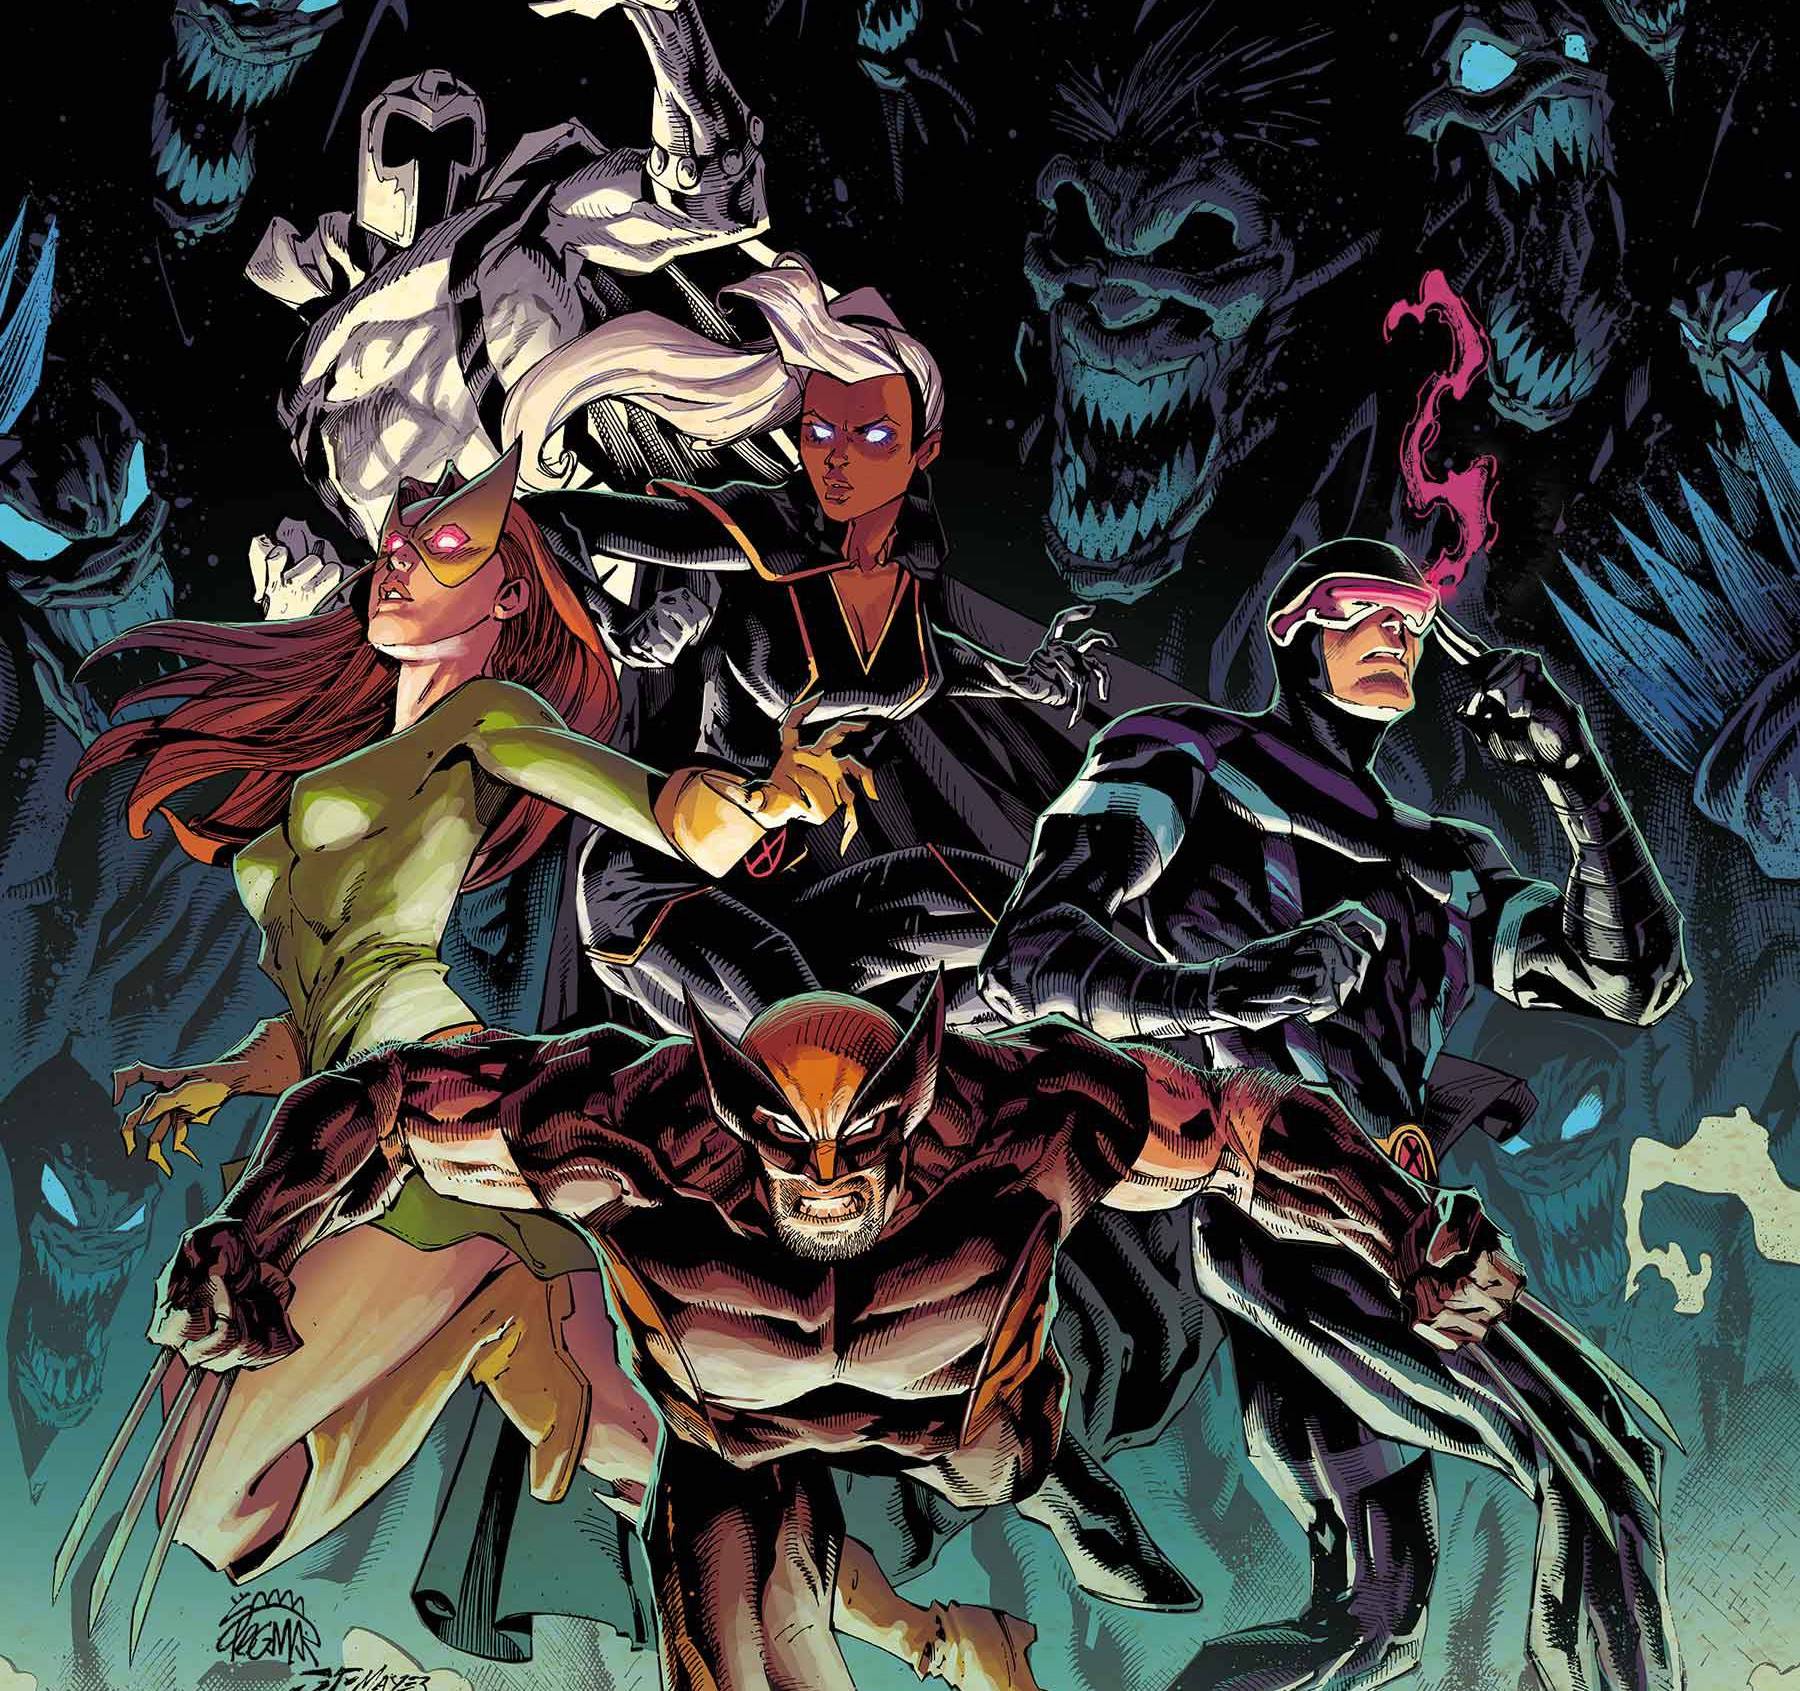 Marvel publishing 'Demon Days: X-Men' bonus story in 'King in Black' #4